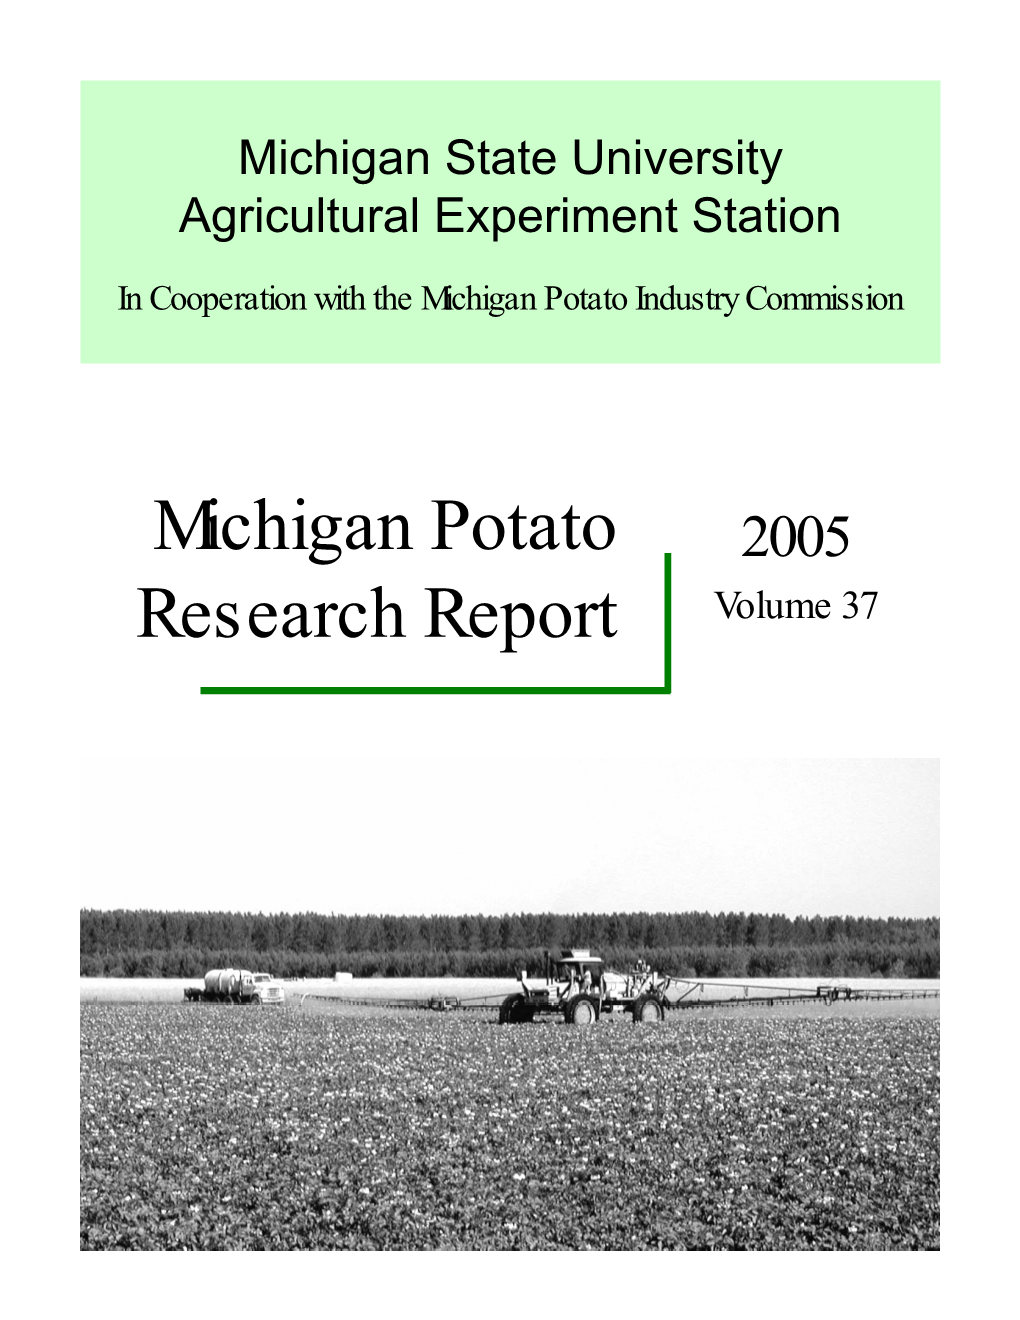 Michigan Potato Research Report